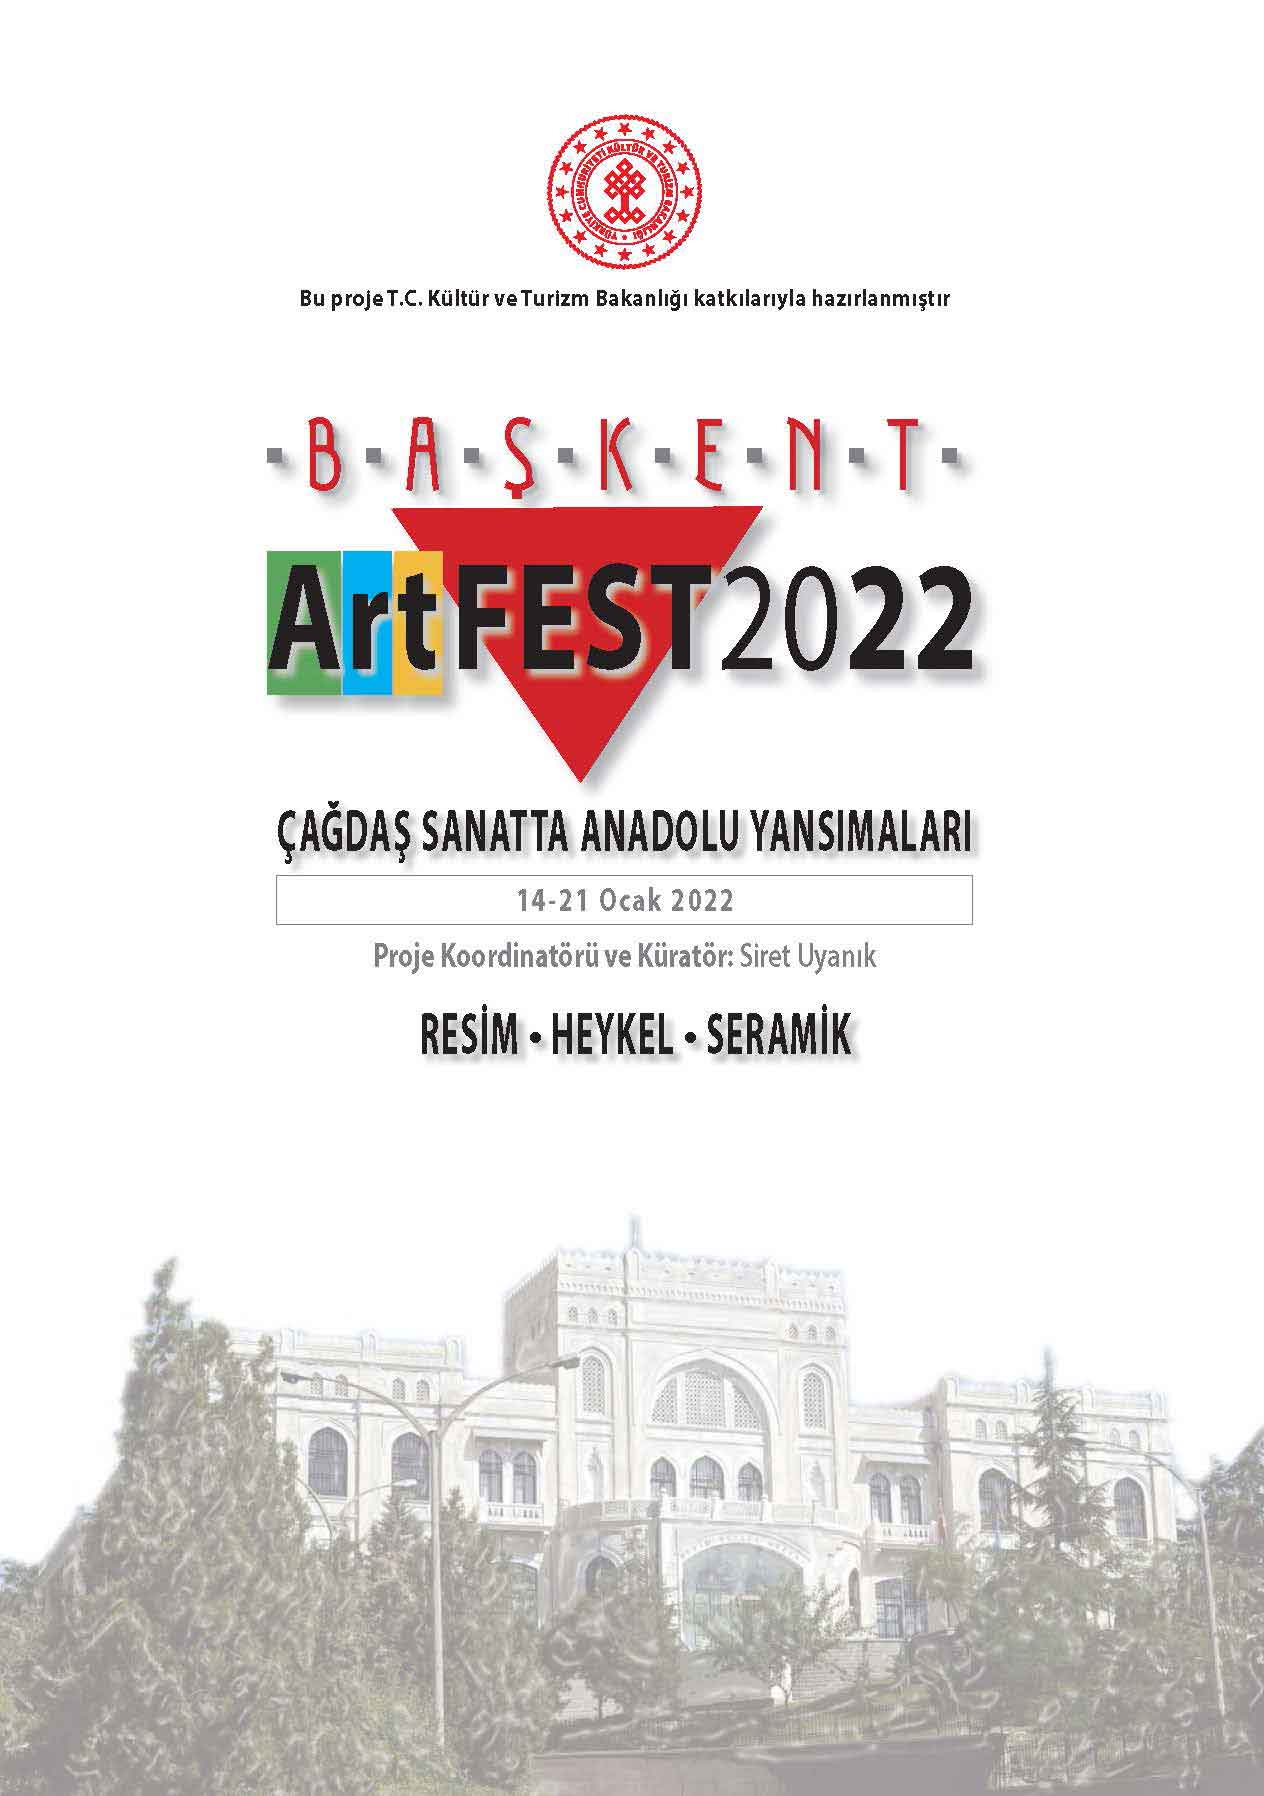 baskent-artfest-afis-burcu-pehlivan